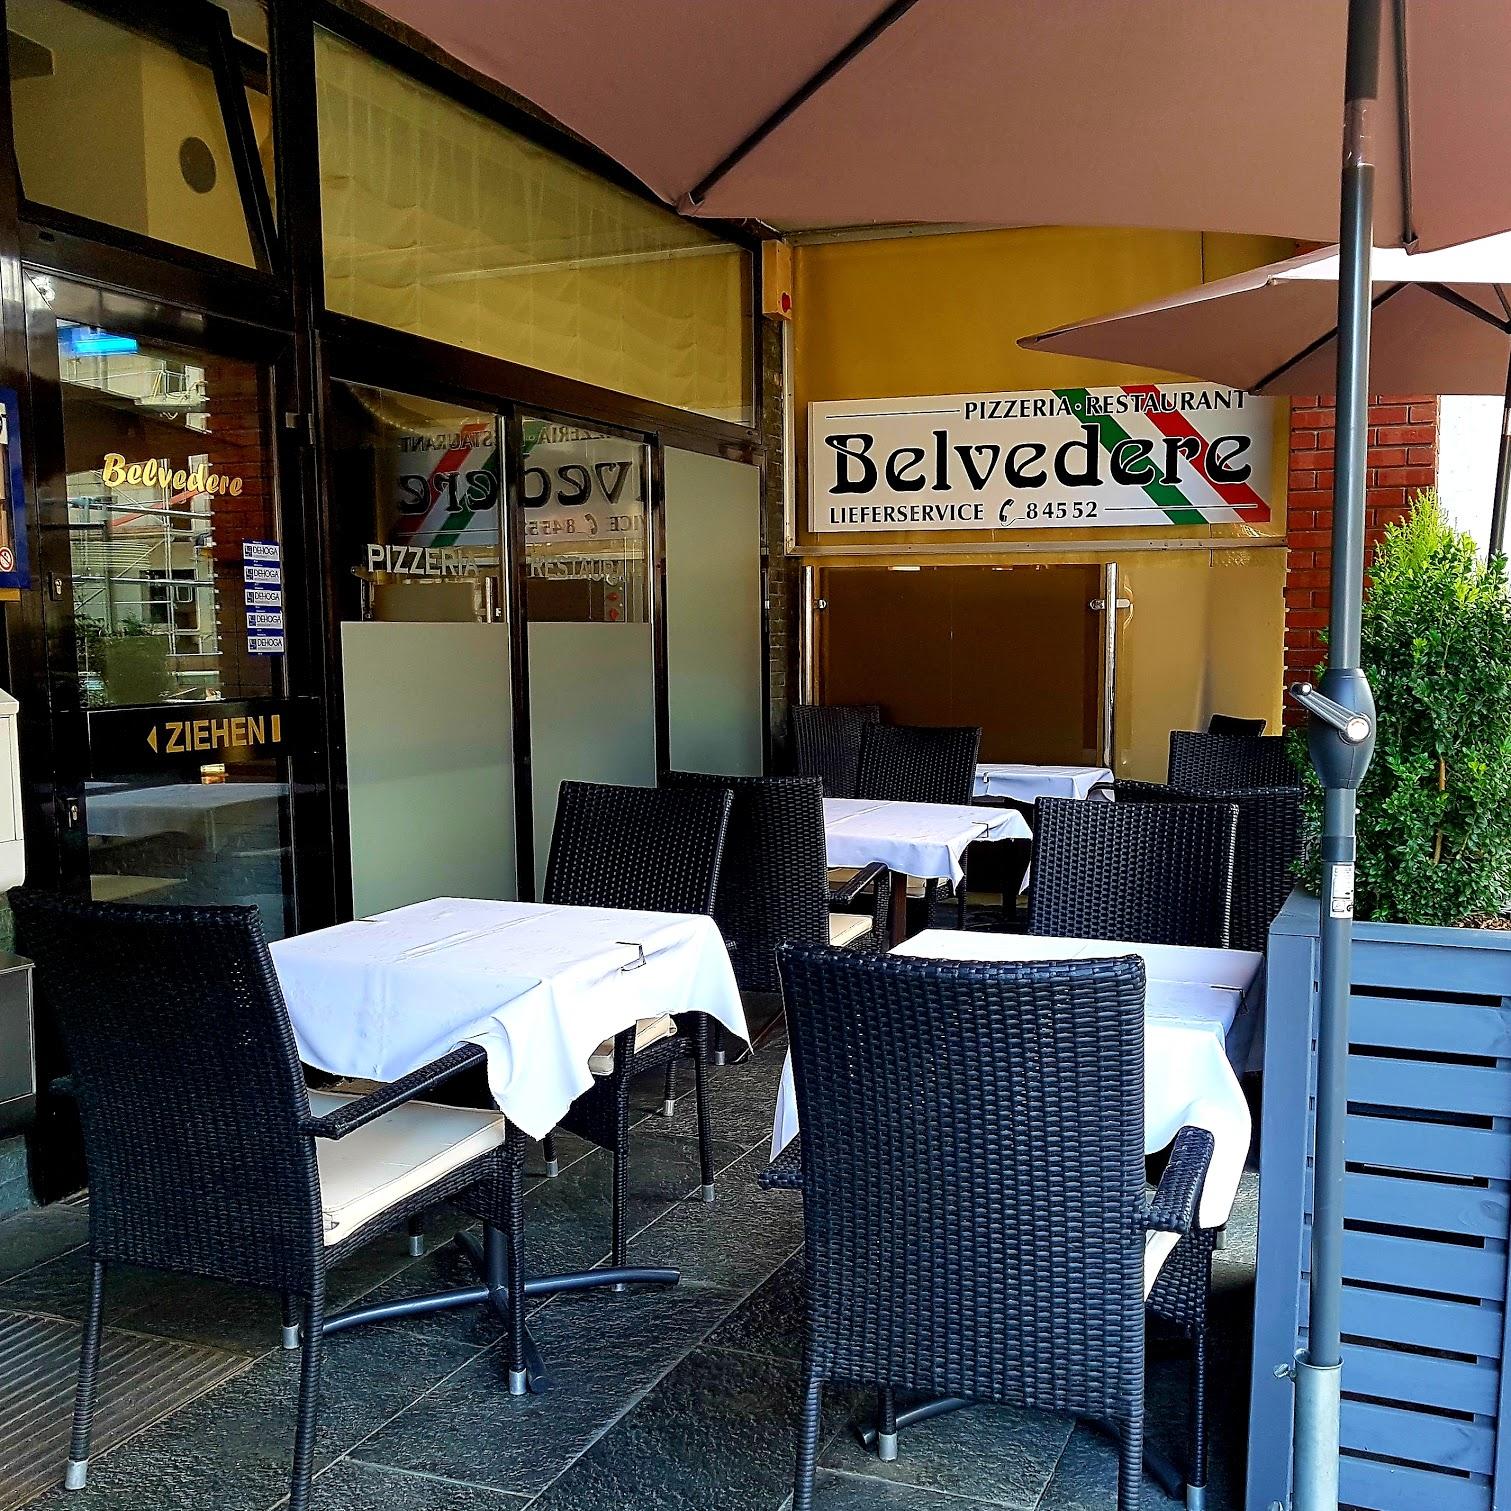 Restaurant "Belvedere Pizzeria" in Pulheim